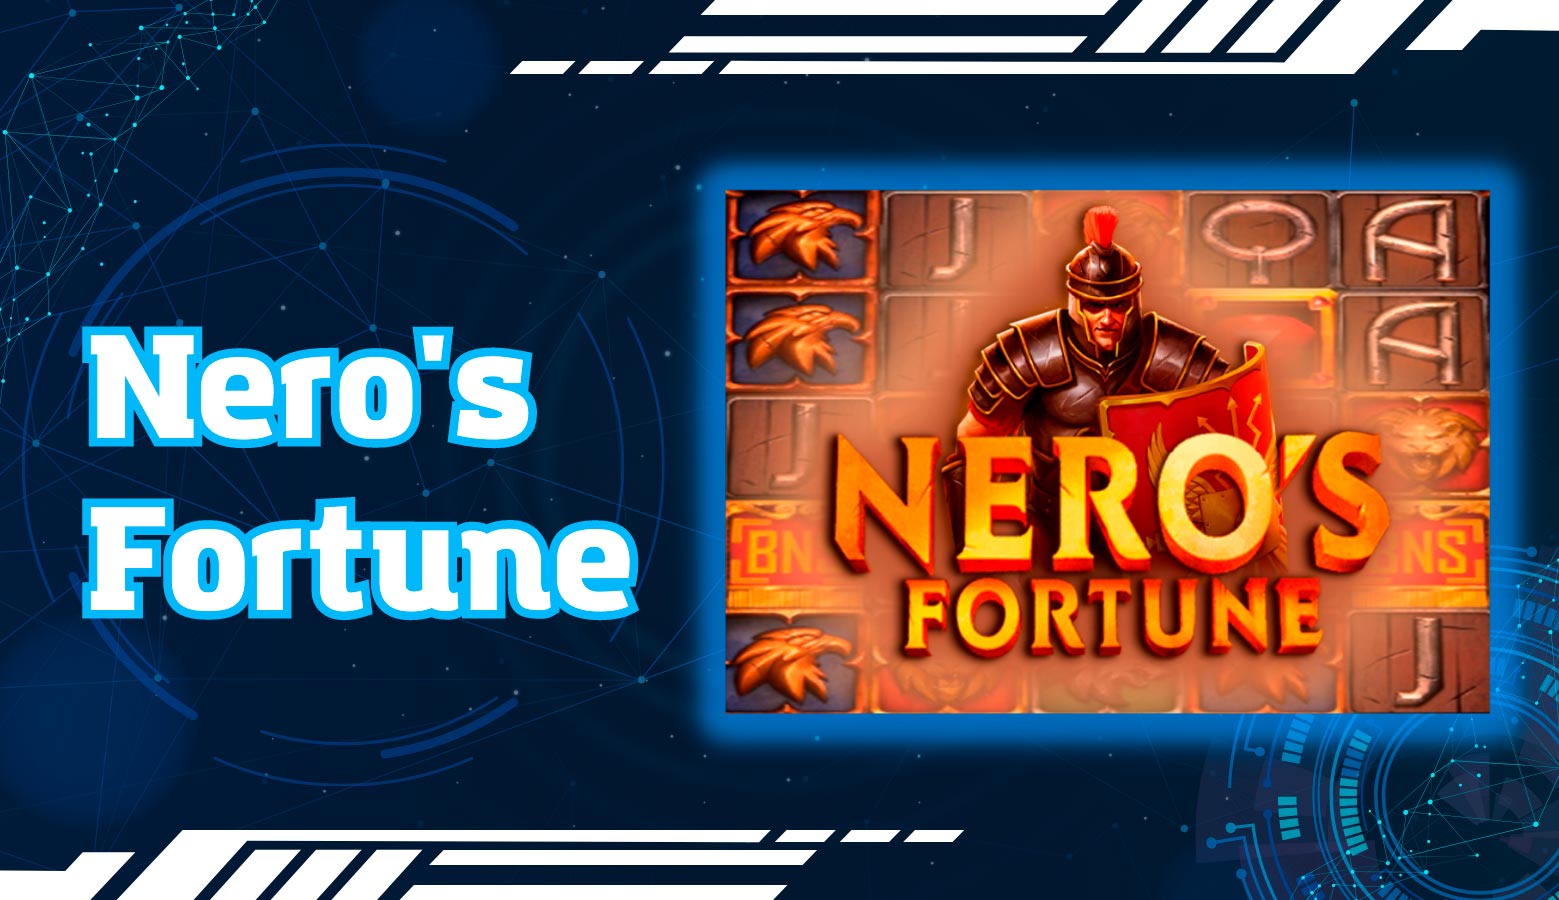 Nero's Fortune 1win